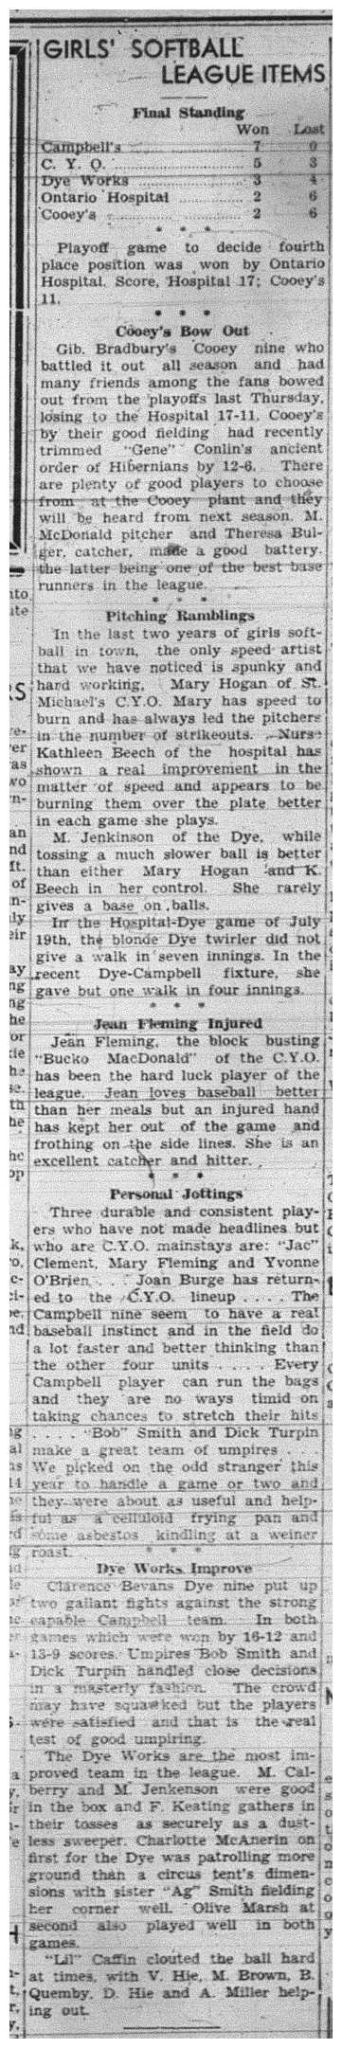 1943-08-19 Softball - Girls League News